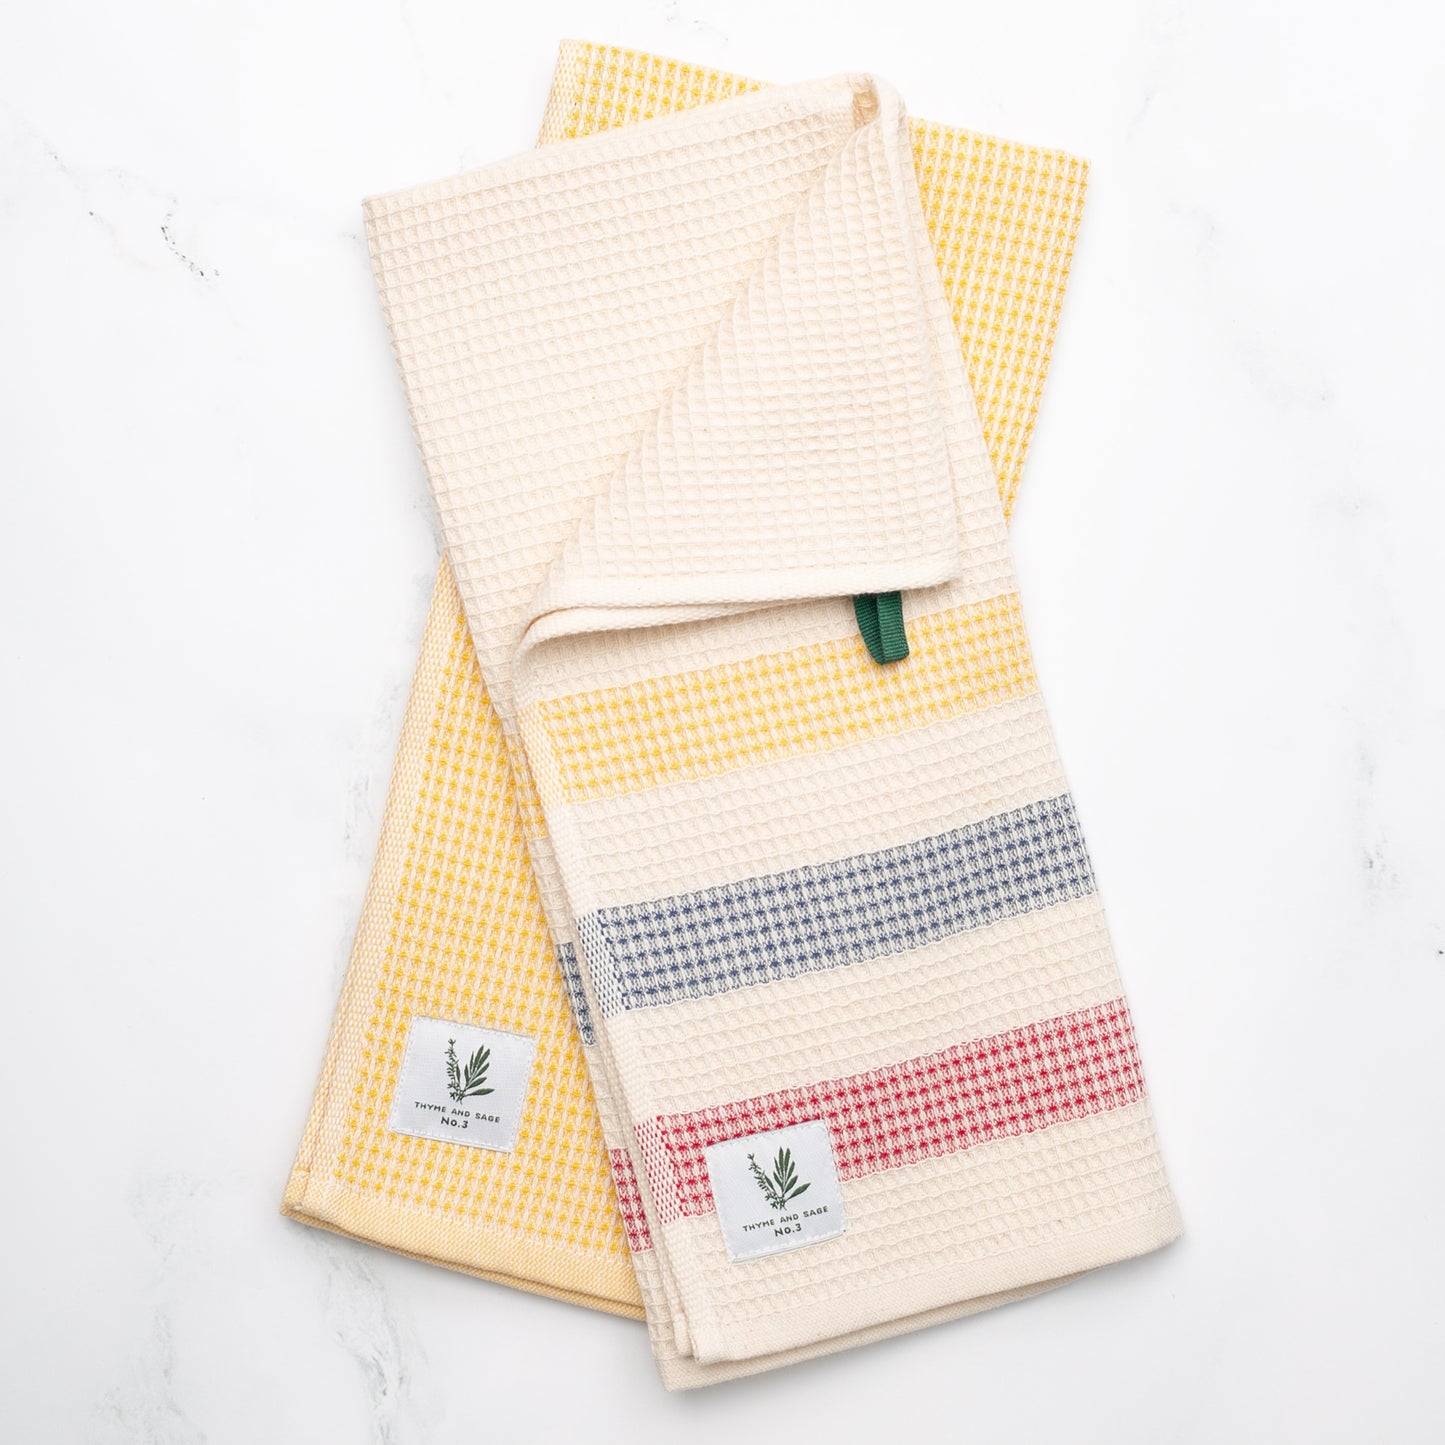 Towel/Kit Design Multitask Set Primary-Saffron